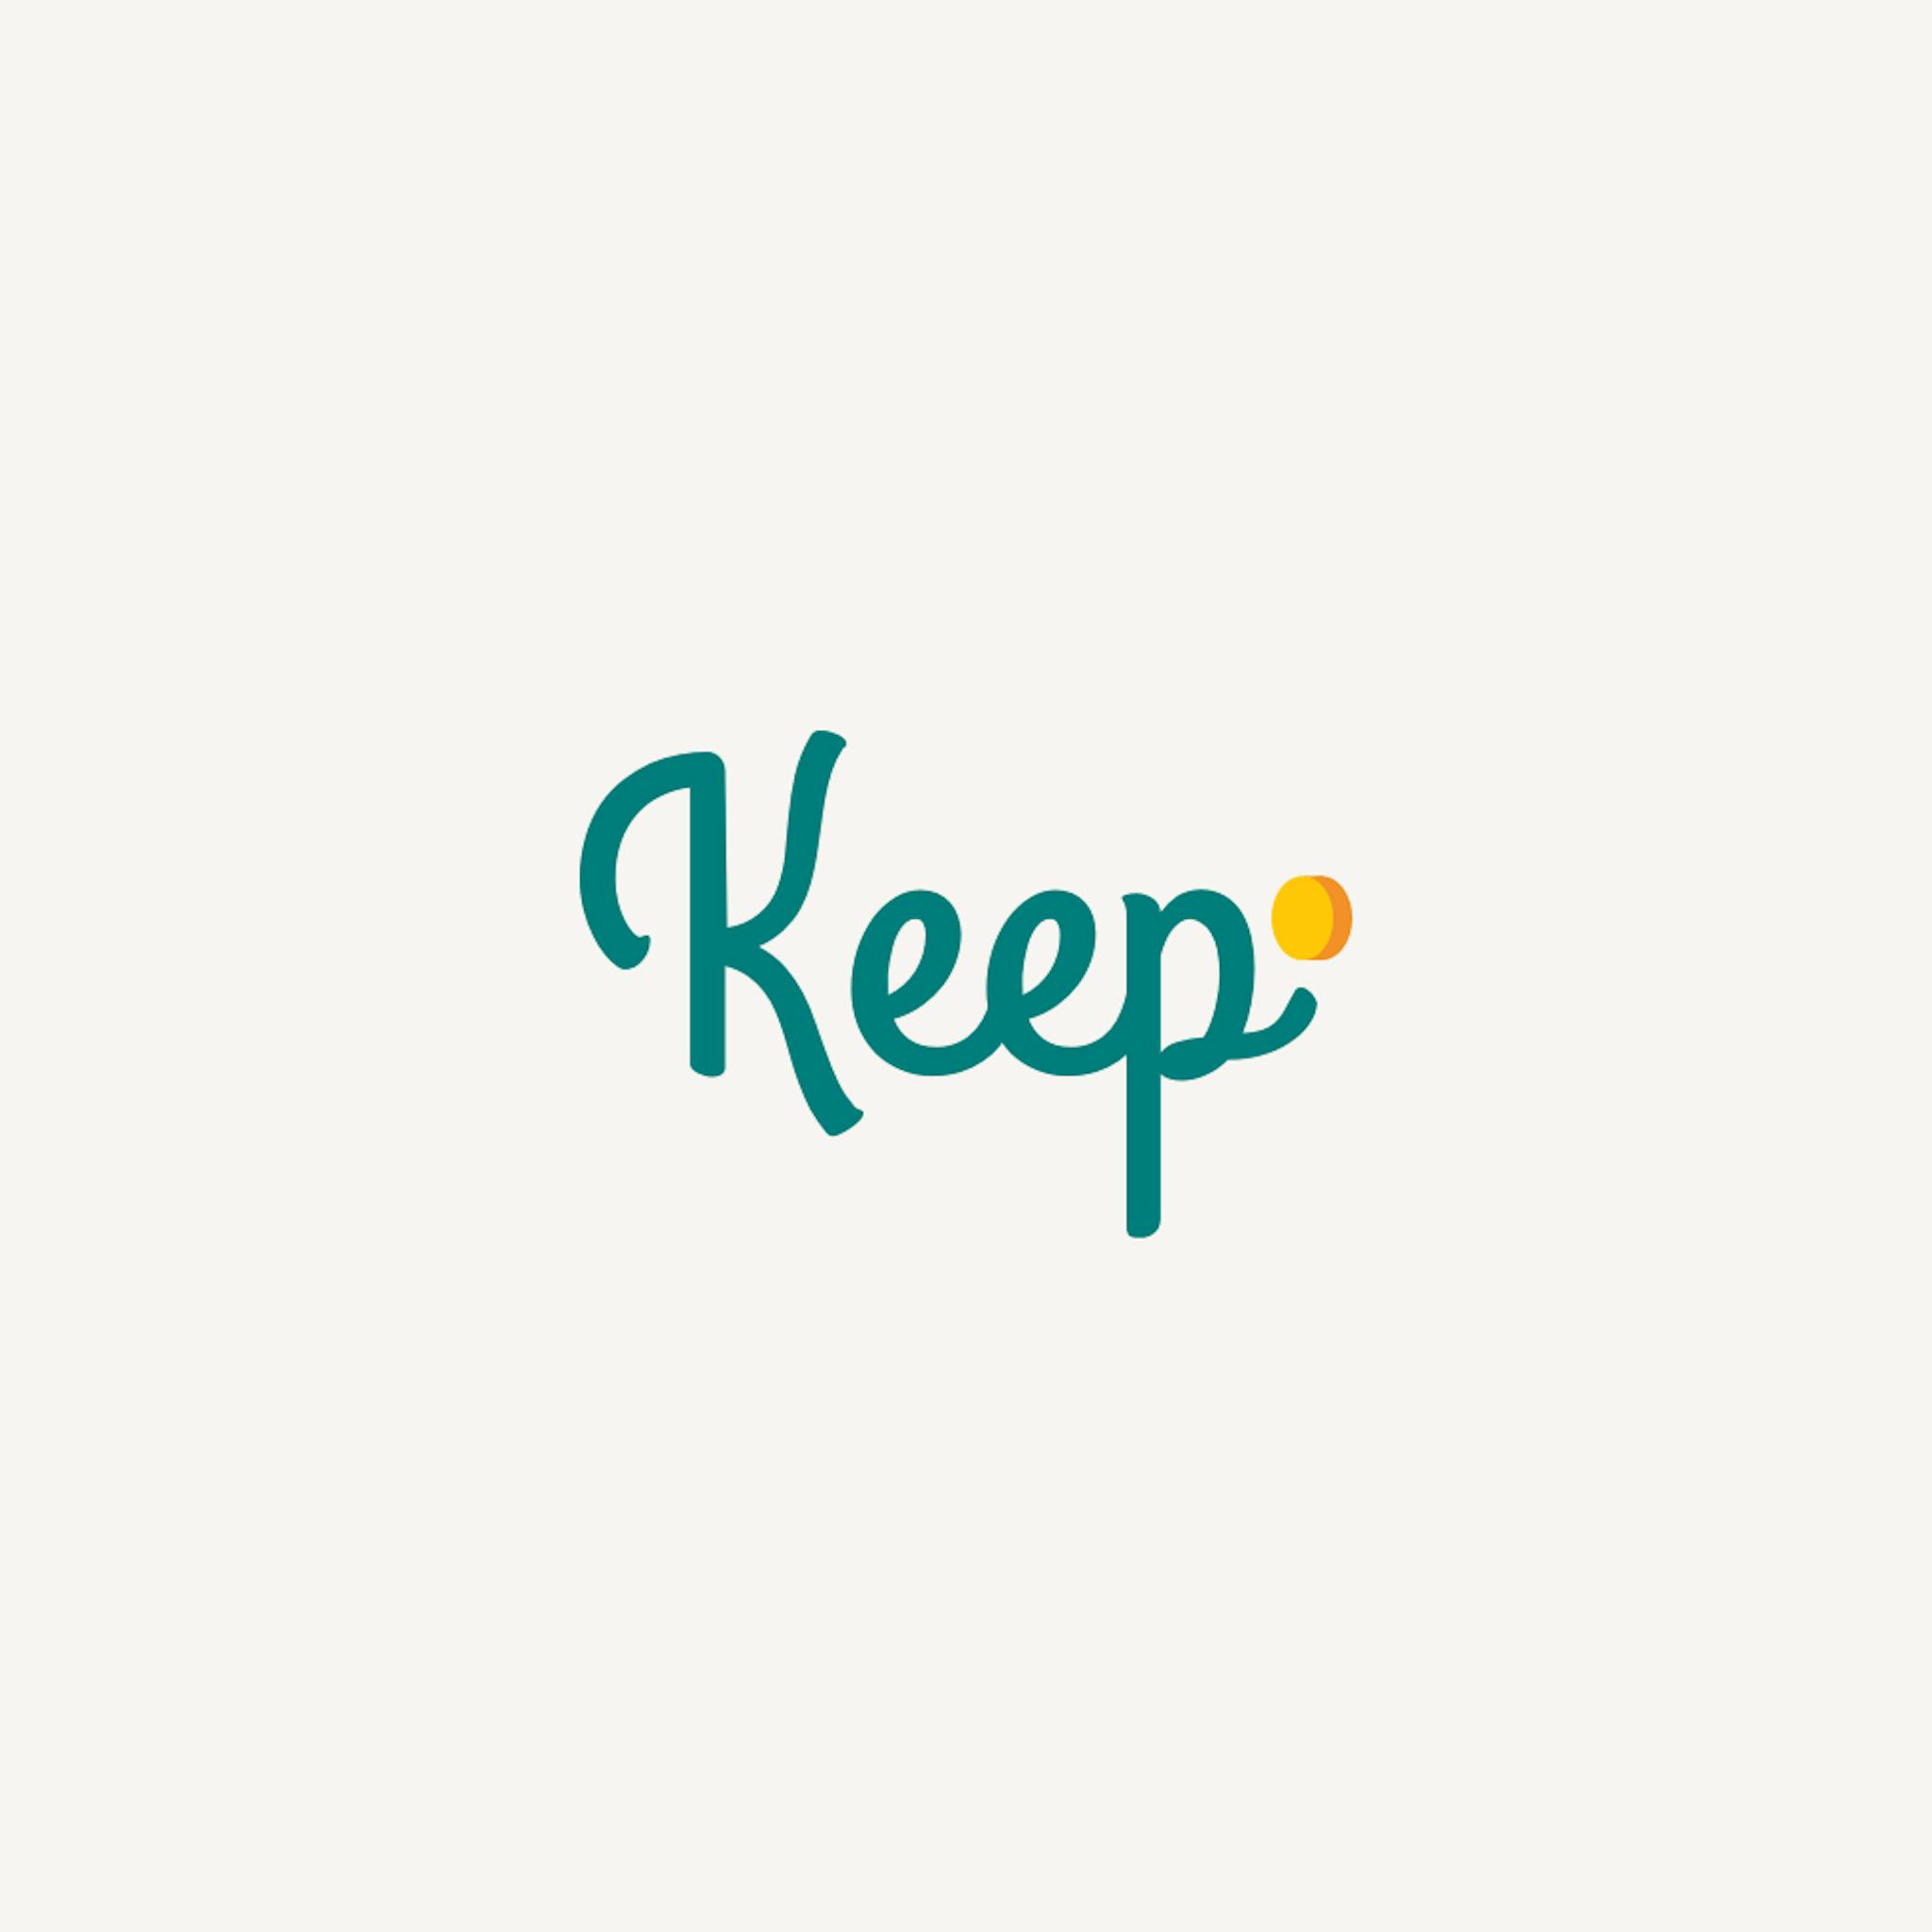 Keep logo